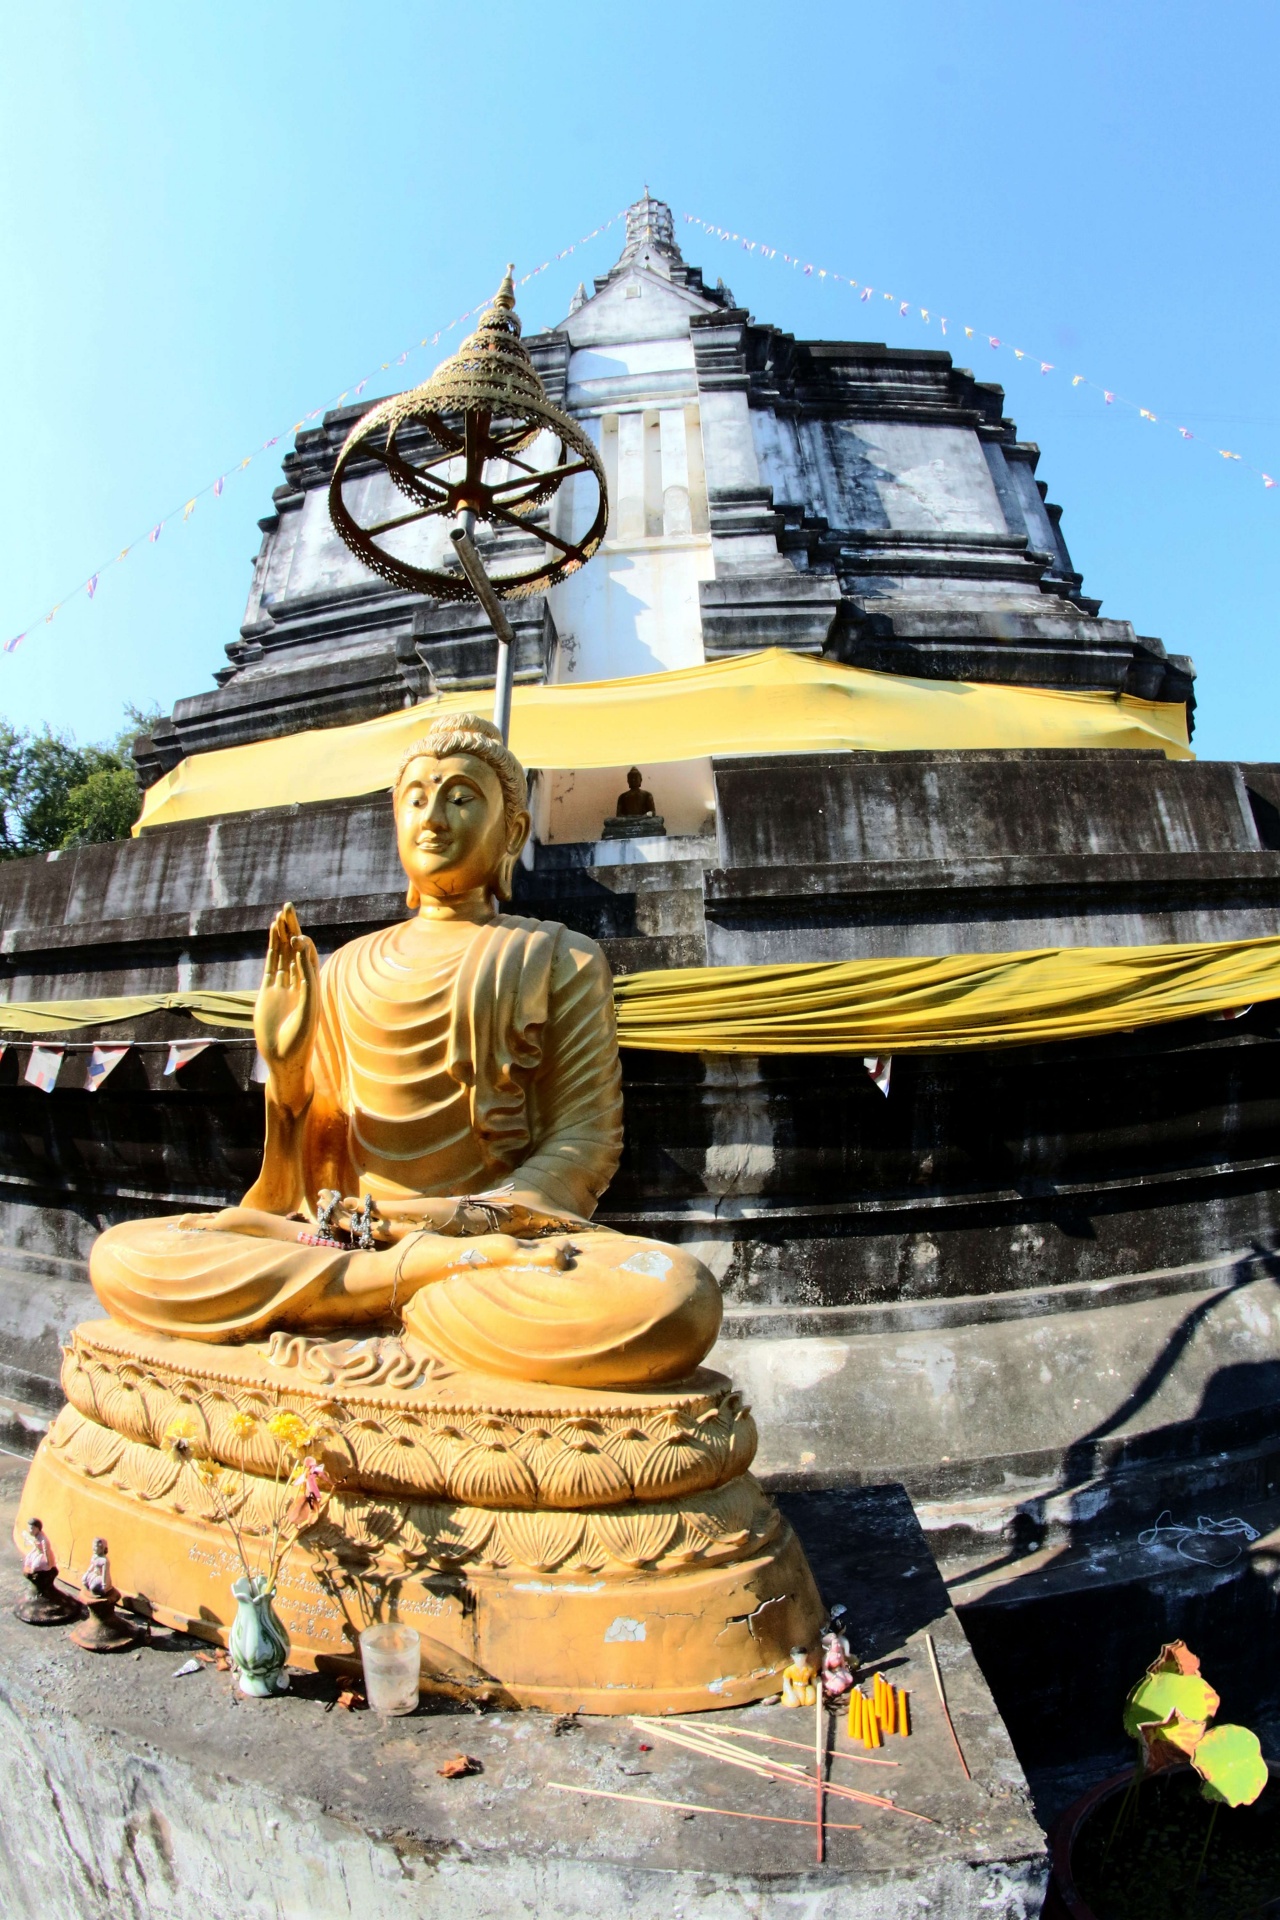 Thaise tempel Wat Phra die suan bruint,